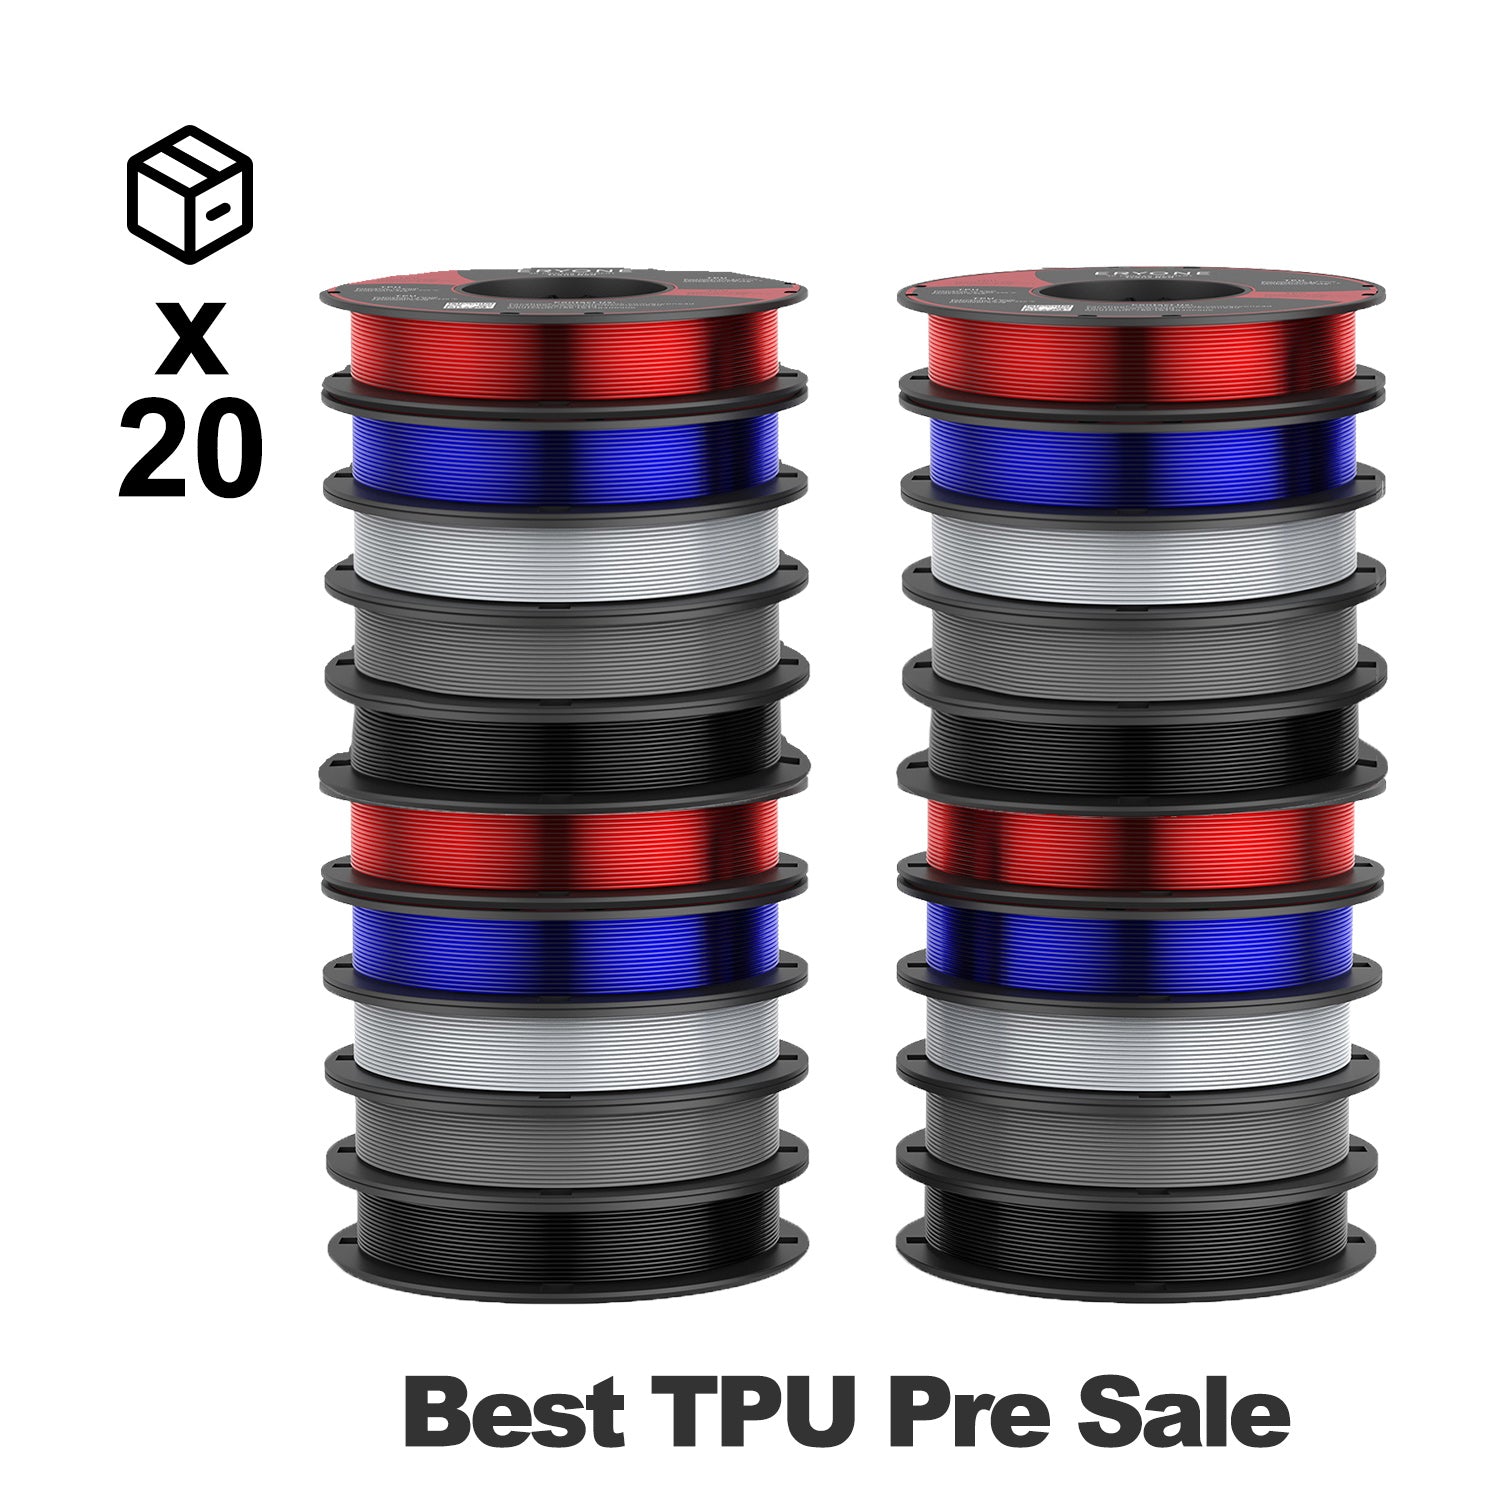 Pre-sale ERYONE 1.75mm TPU 3D Printer Filament, Dimensional Accuracy +/- 0.05 mm, 0.5kg (1.1 LB) / Spool